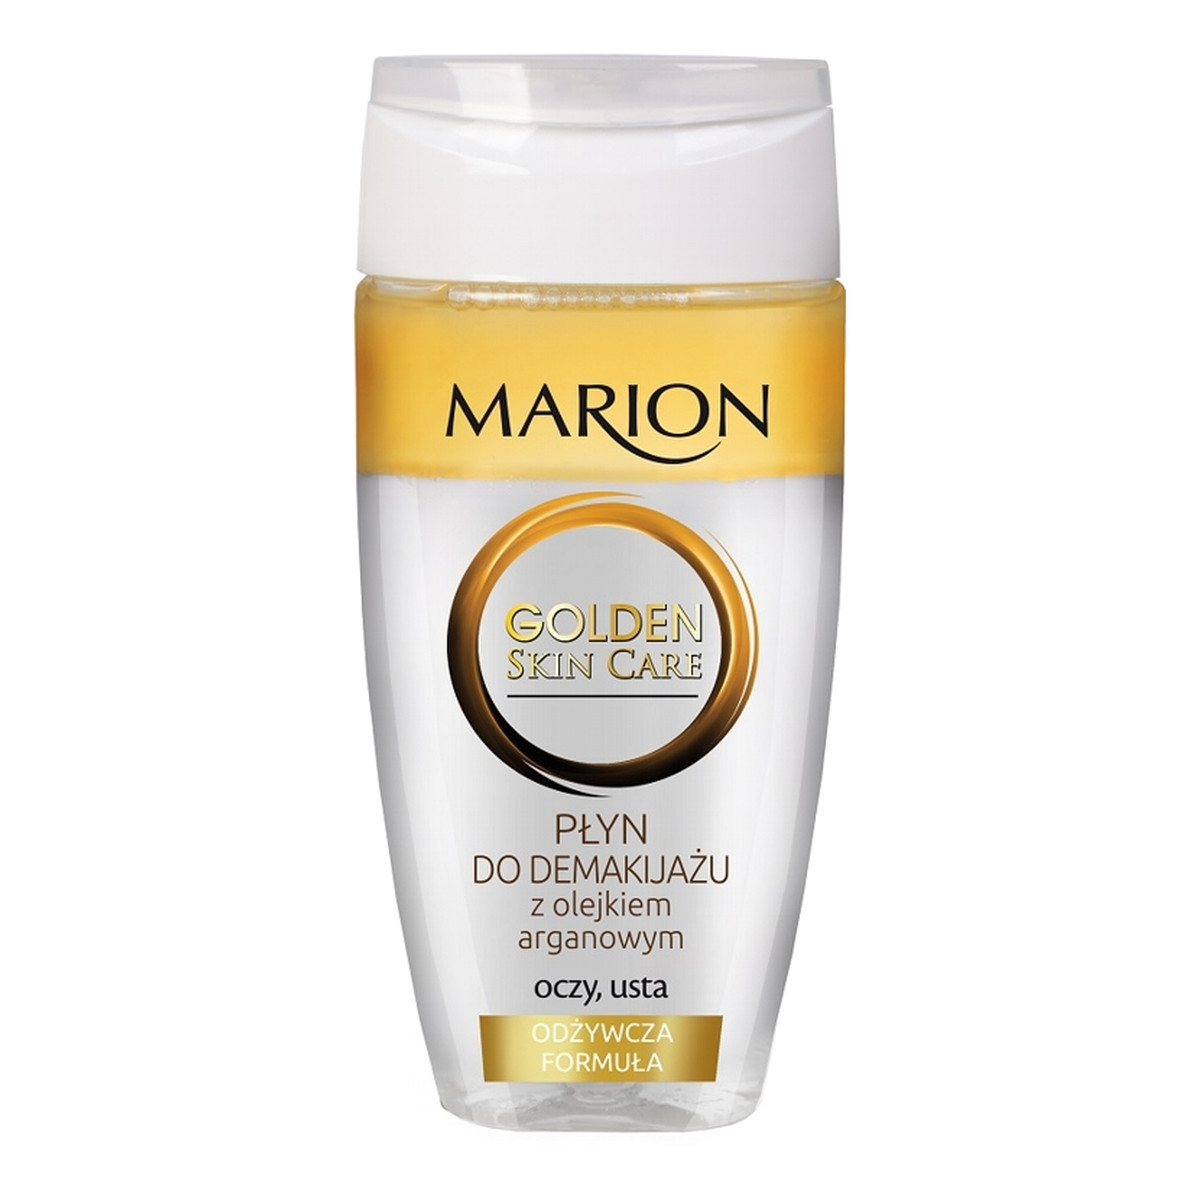 Marion Golden Skin Care dwufazowy płyn do demakijażu oczu i ust z olejkiem arganowym 150ml